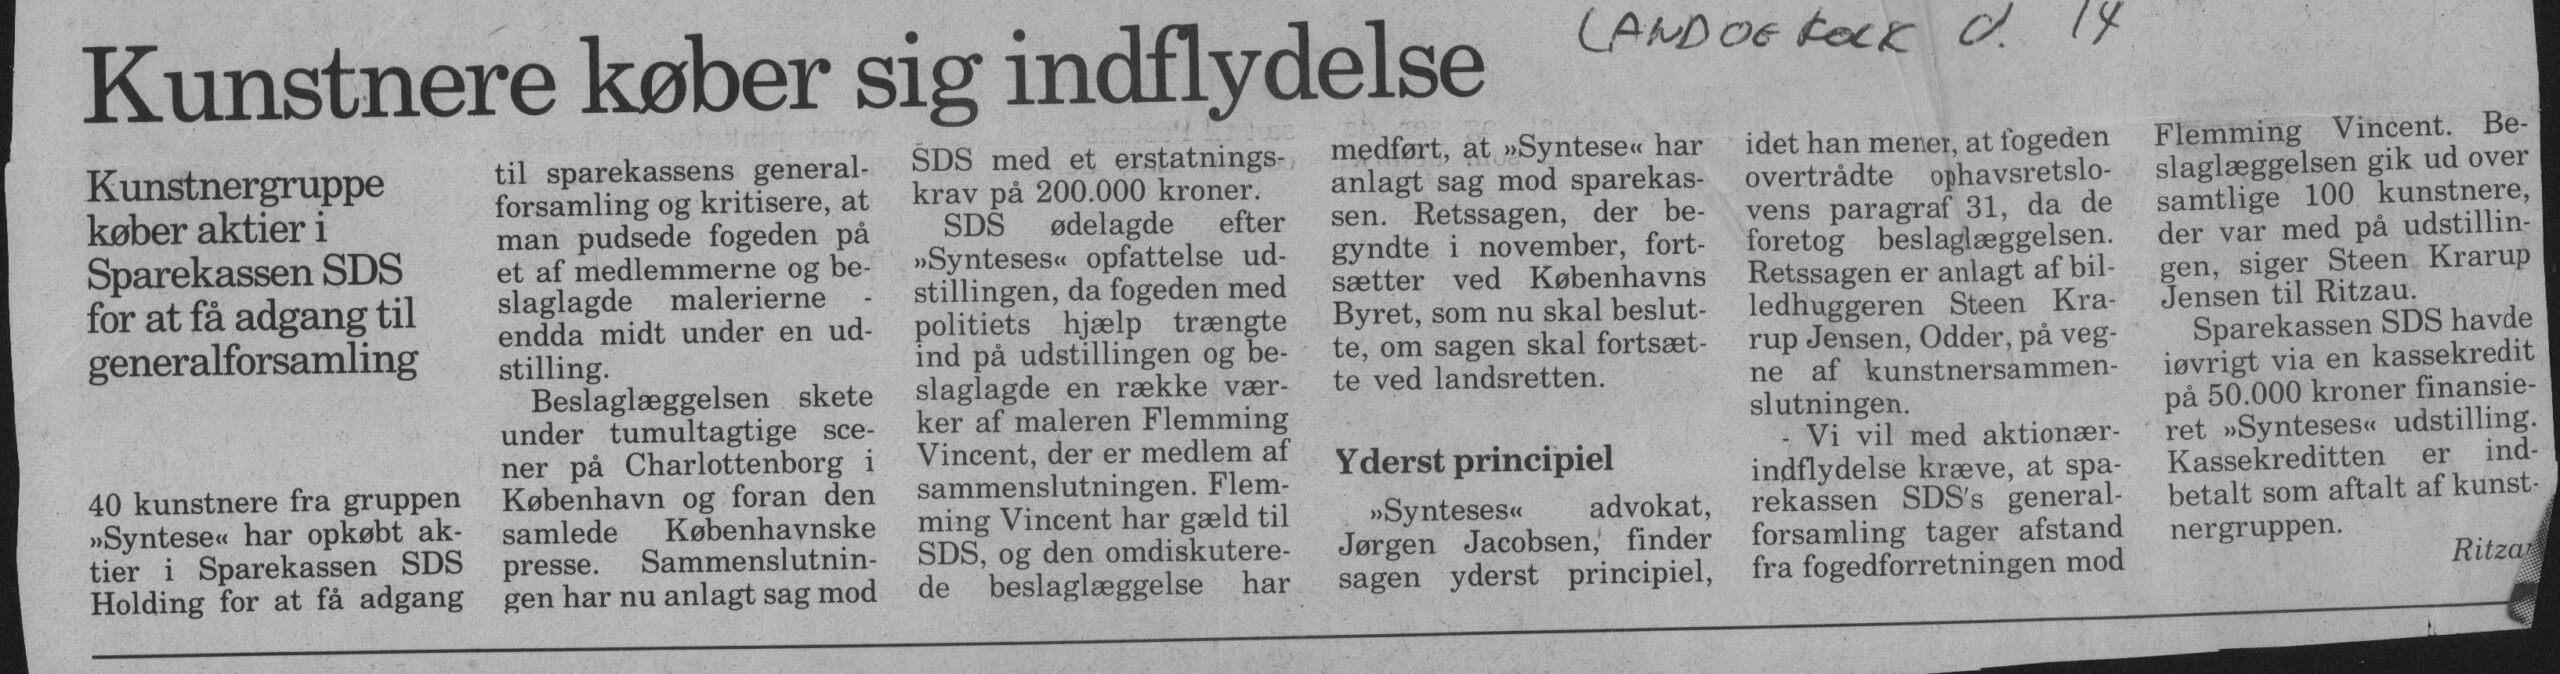 Kunstnerne køber sig indflydelse. Omtale (Retssag. Den lange rejse, Charlottenborg, København 1989). Ritzau. Land og Folk.